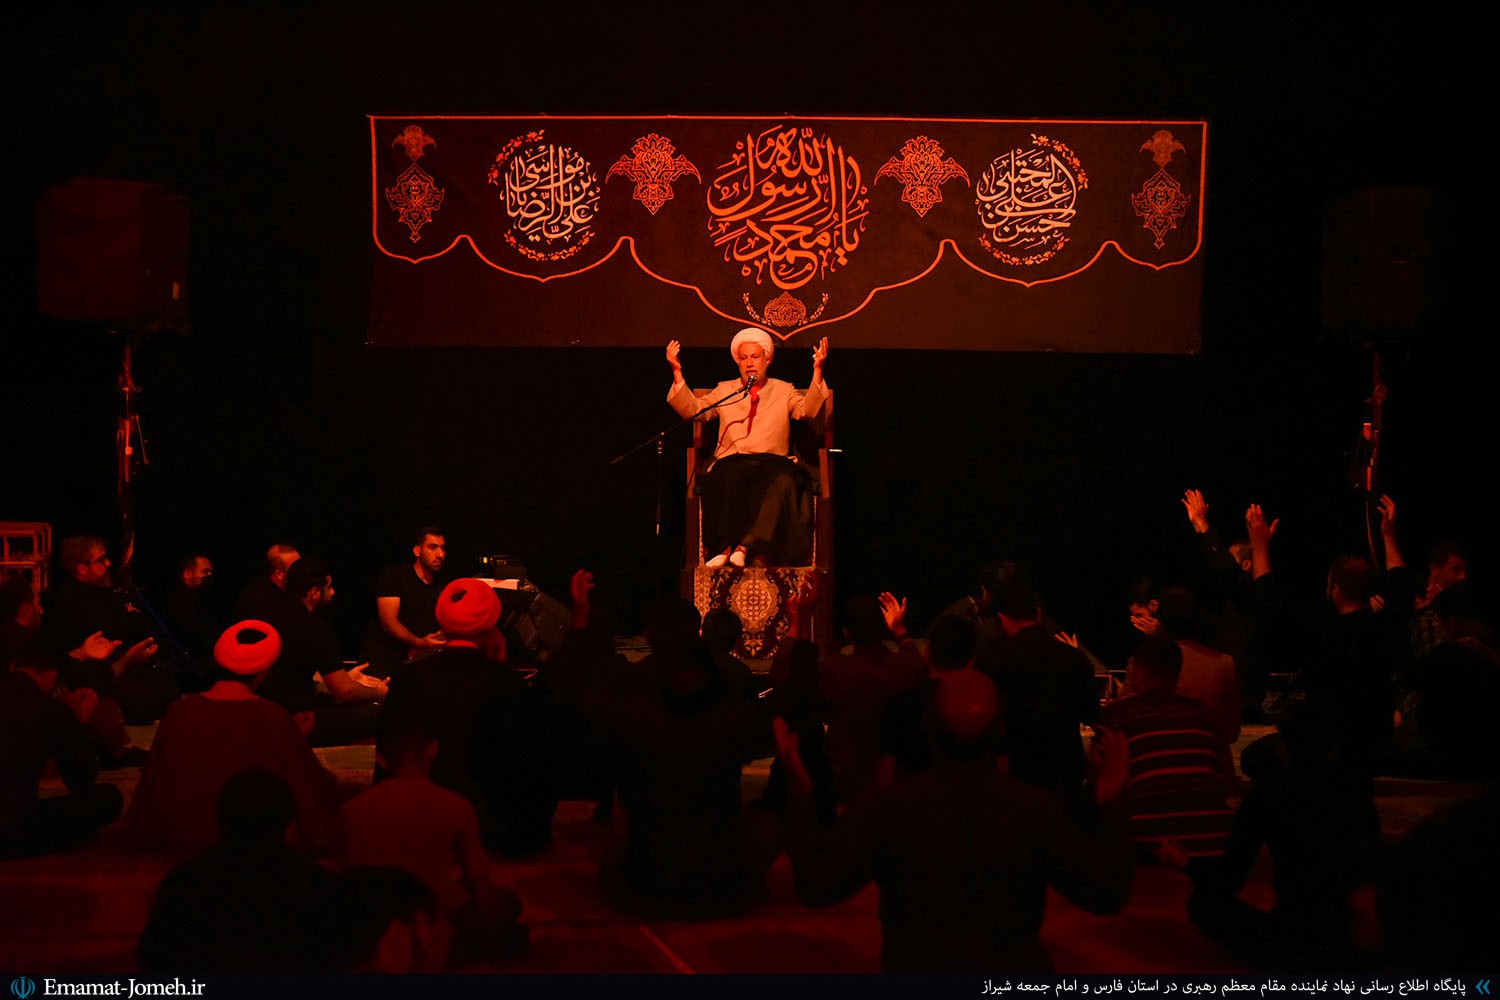 مراسم سوگواری رحلت پیامبر اکرم(ص) با سخنرانی آیت الله دژکام در هیئت مصباح شیراز